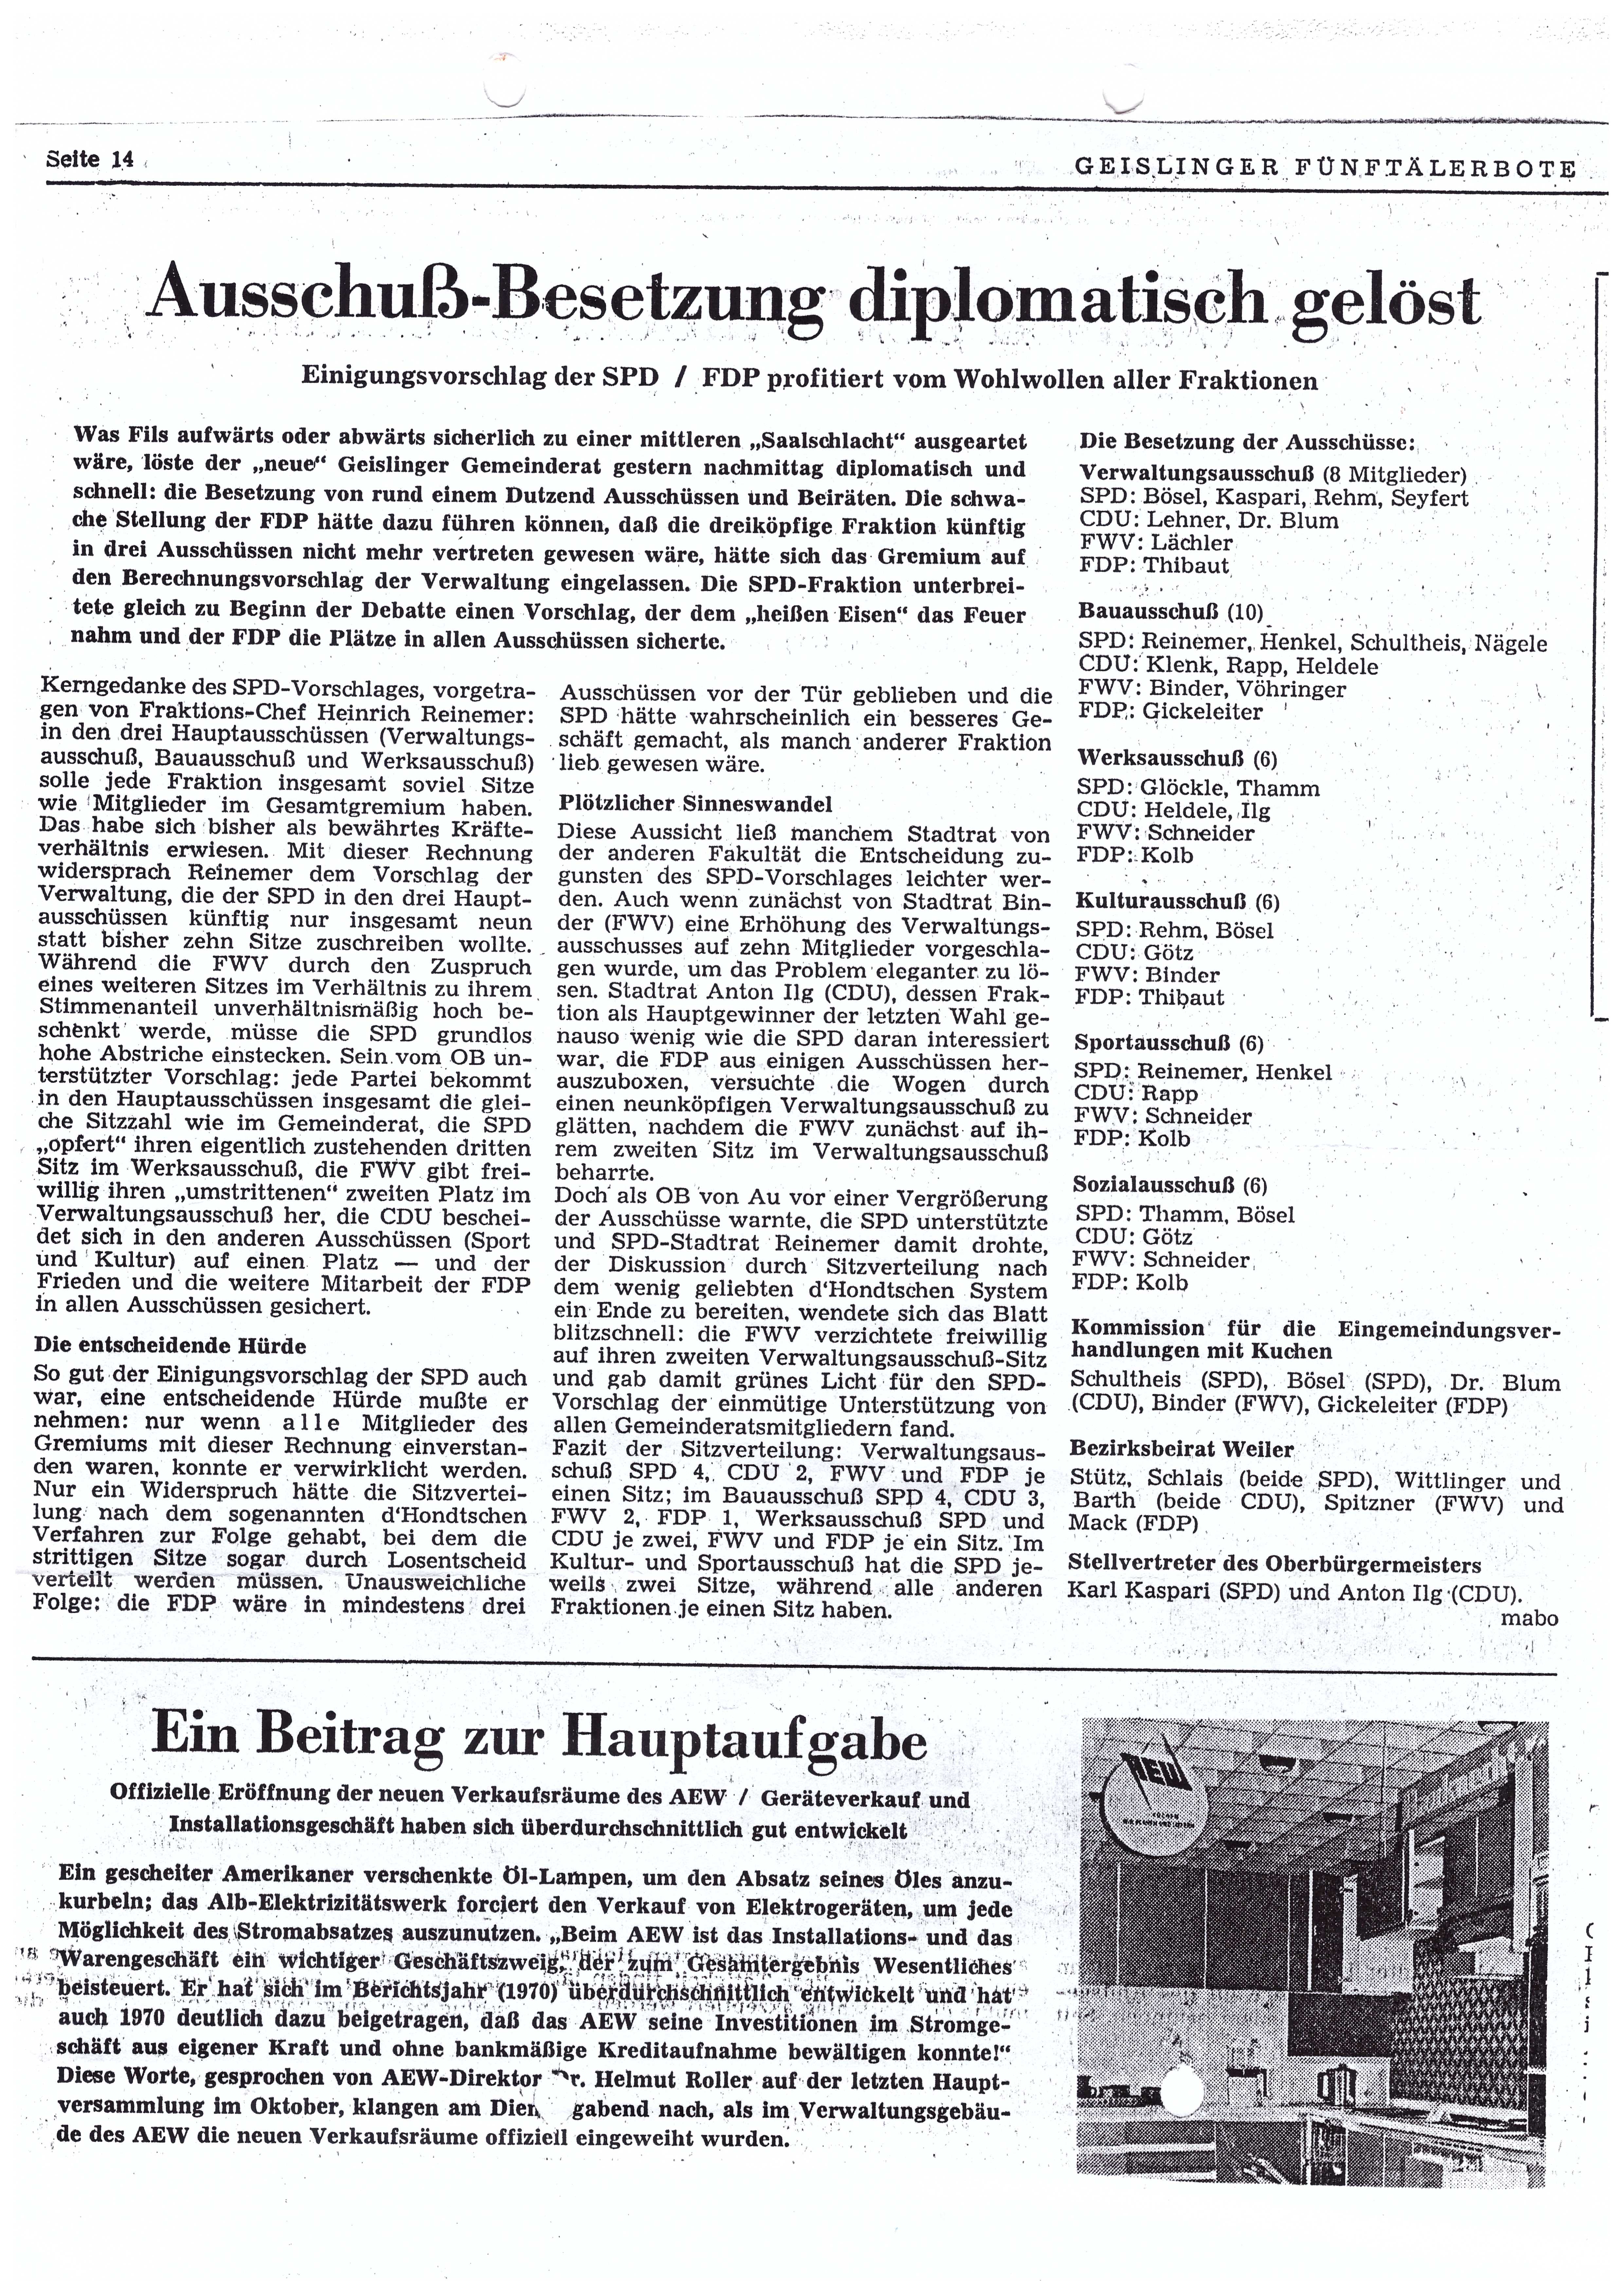 Bericht über die Besetzung der einzelnen Ausschüsse nach der Gemeinderatswahl 1971. Interessant ist im unteren Teil der Artikel über das AEW.